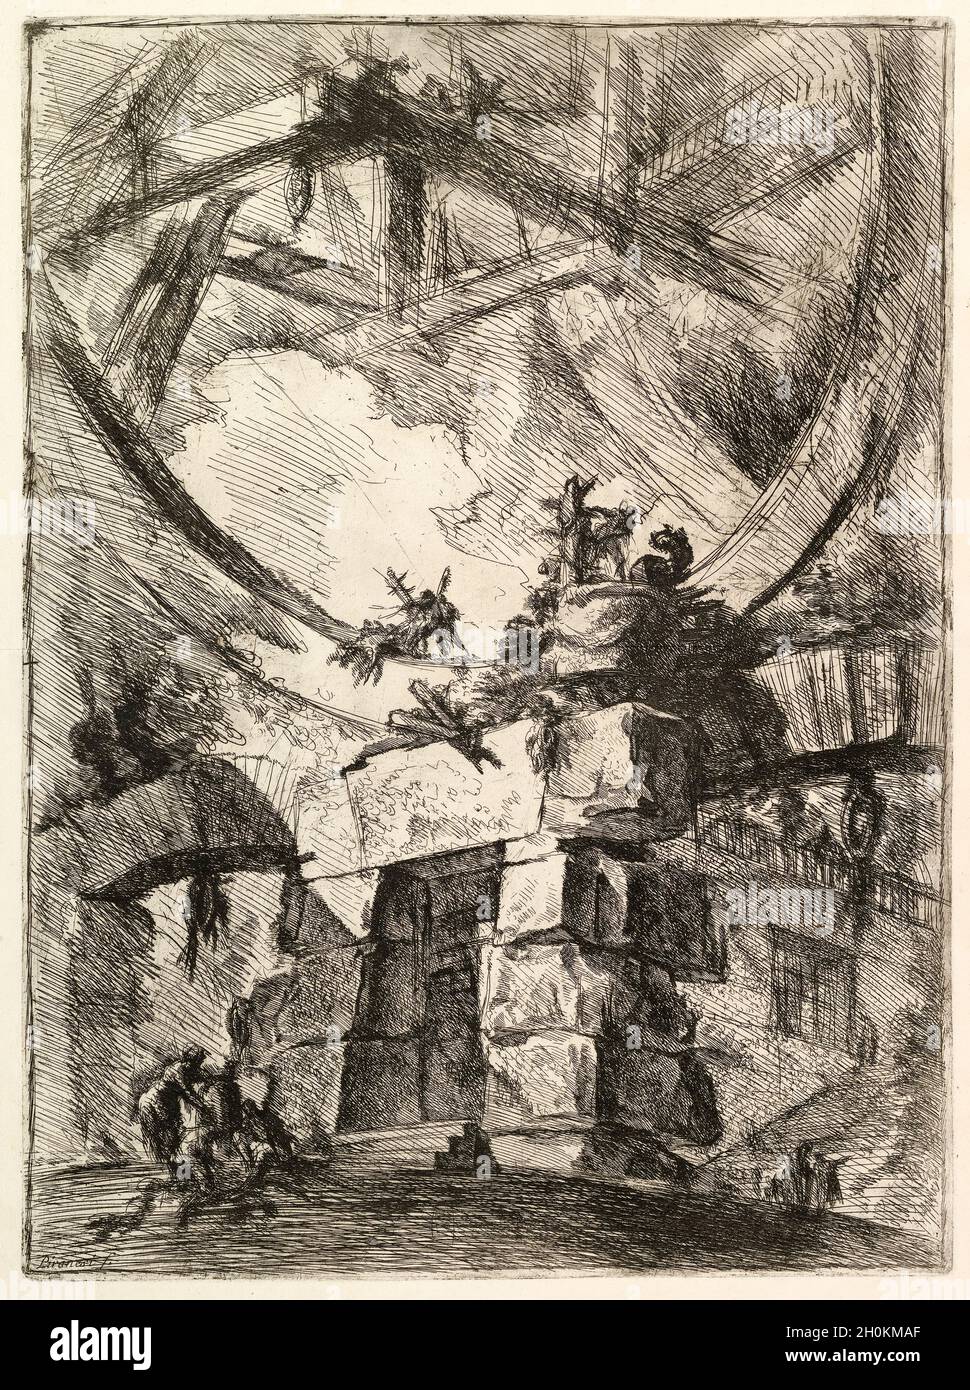 Giovanni Battista Piranesi, The Giant Wheel from Carceri d'invenzione (Imaginary Prisons), engraving, 1749-1750 Stock Photo